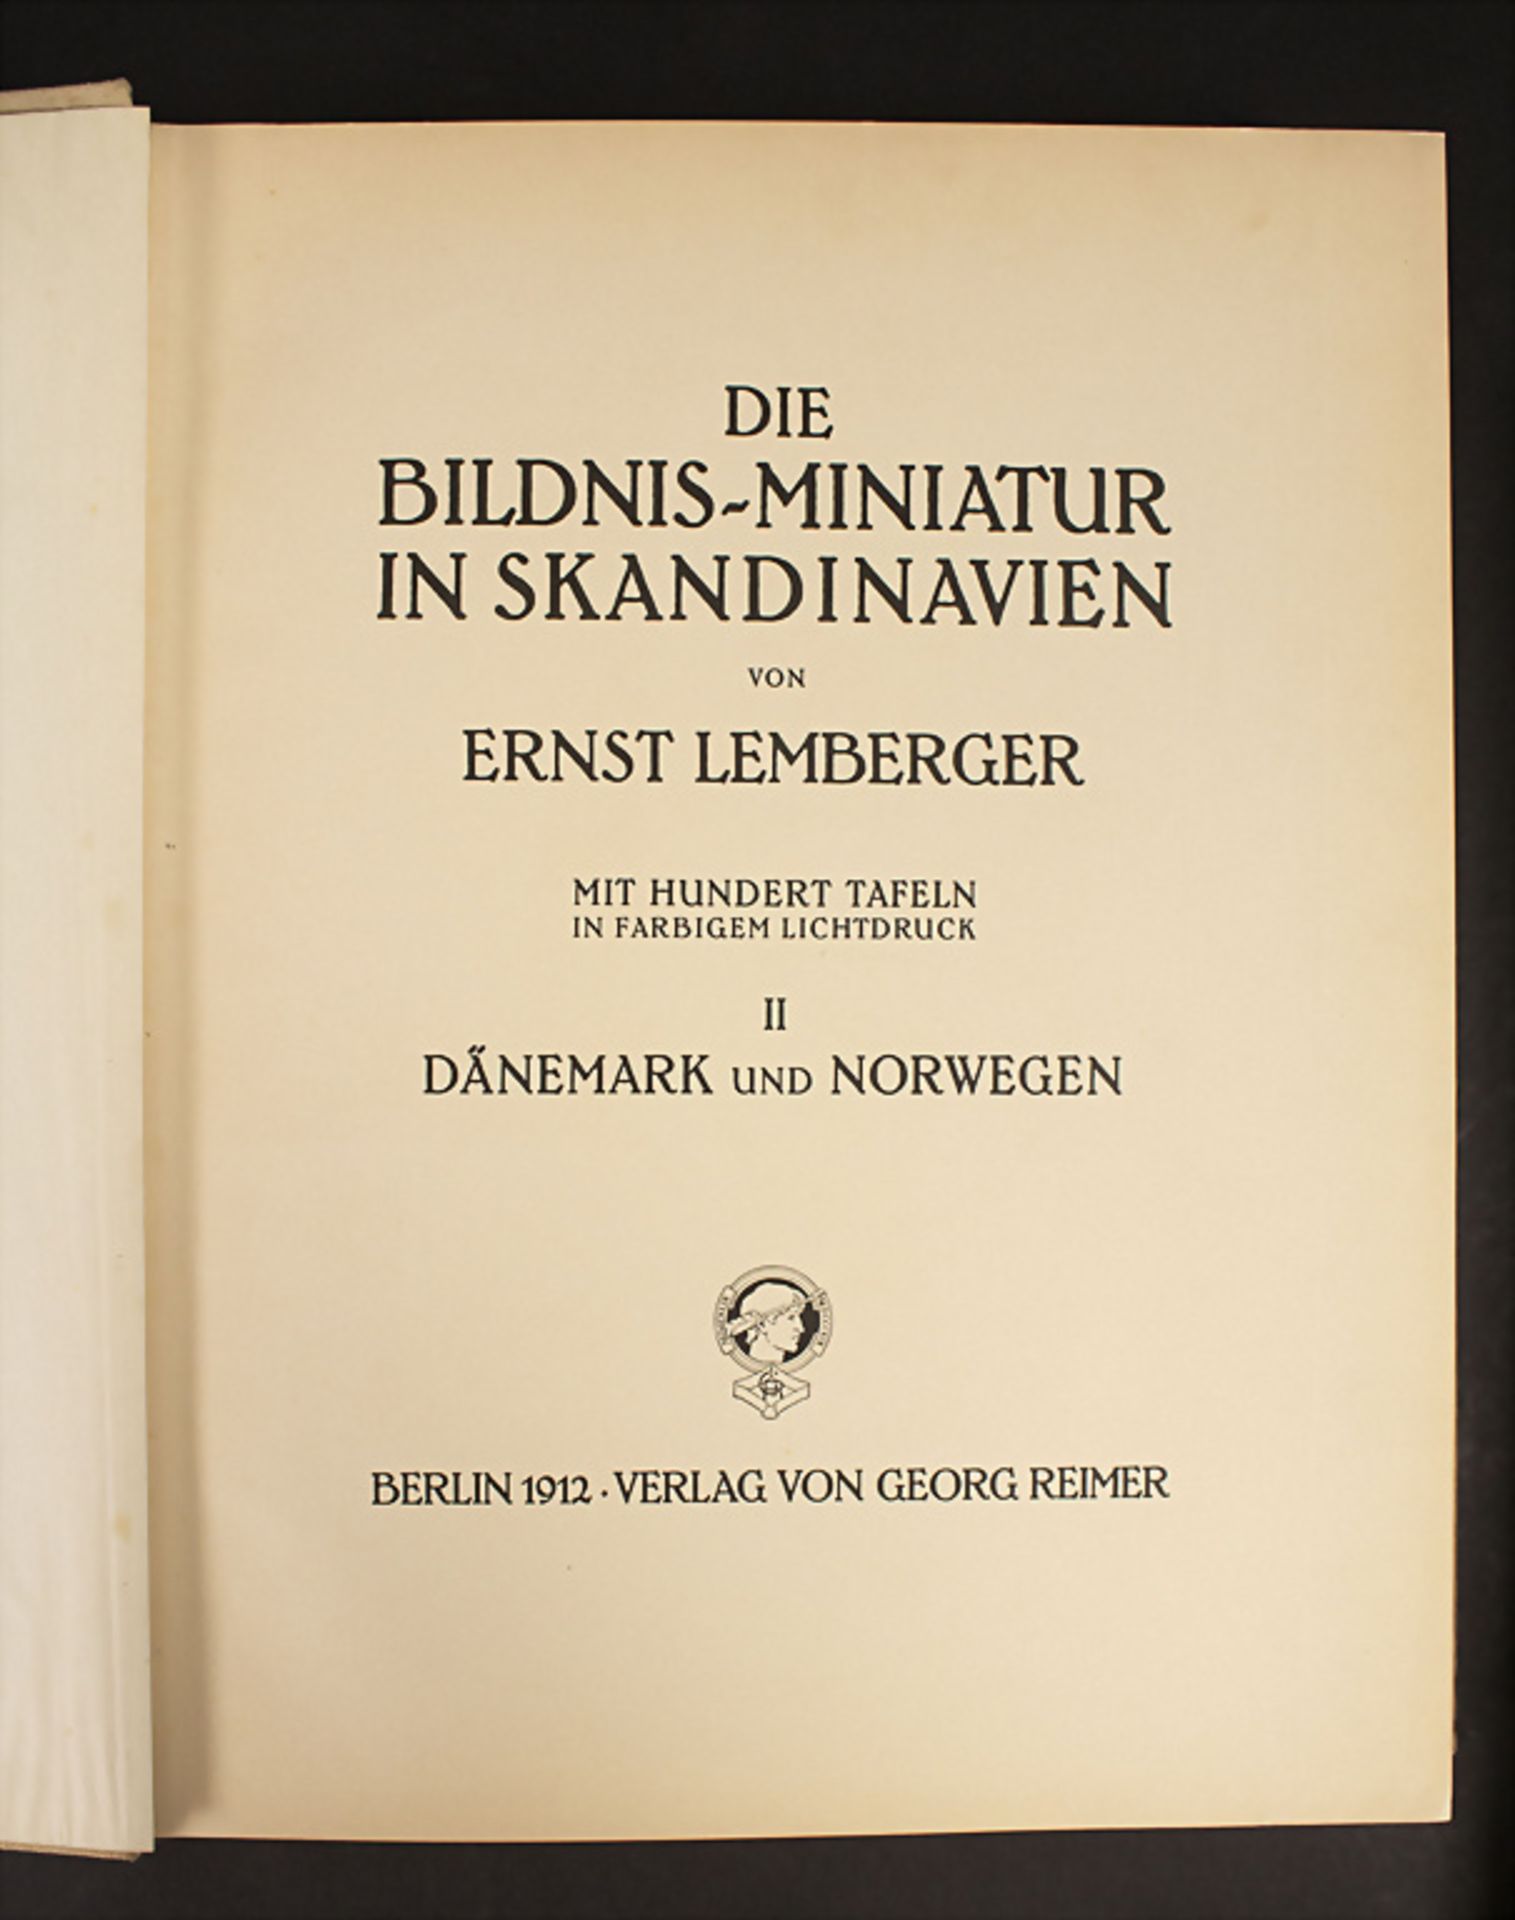 Ernst Lemberger: 'Die Bildnis-Miniatur in Skandinavien', 1929